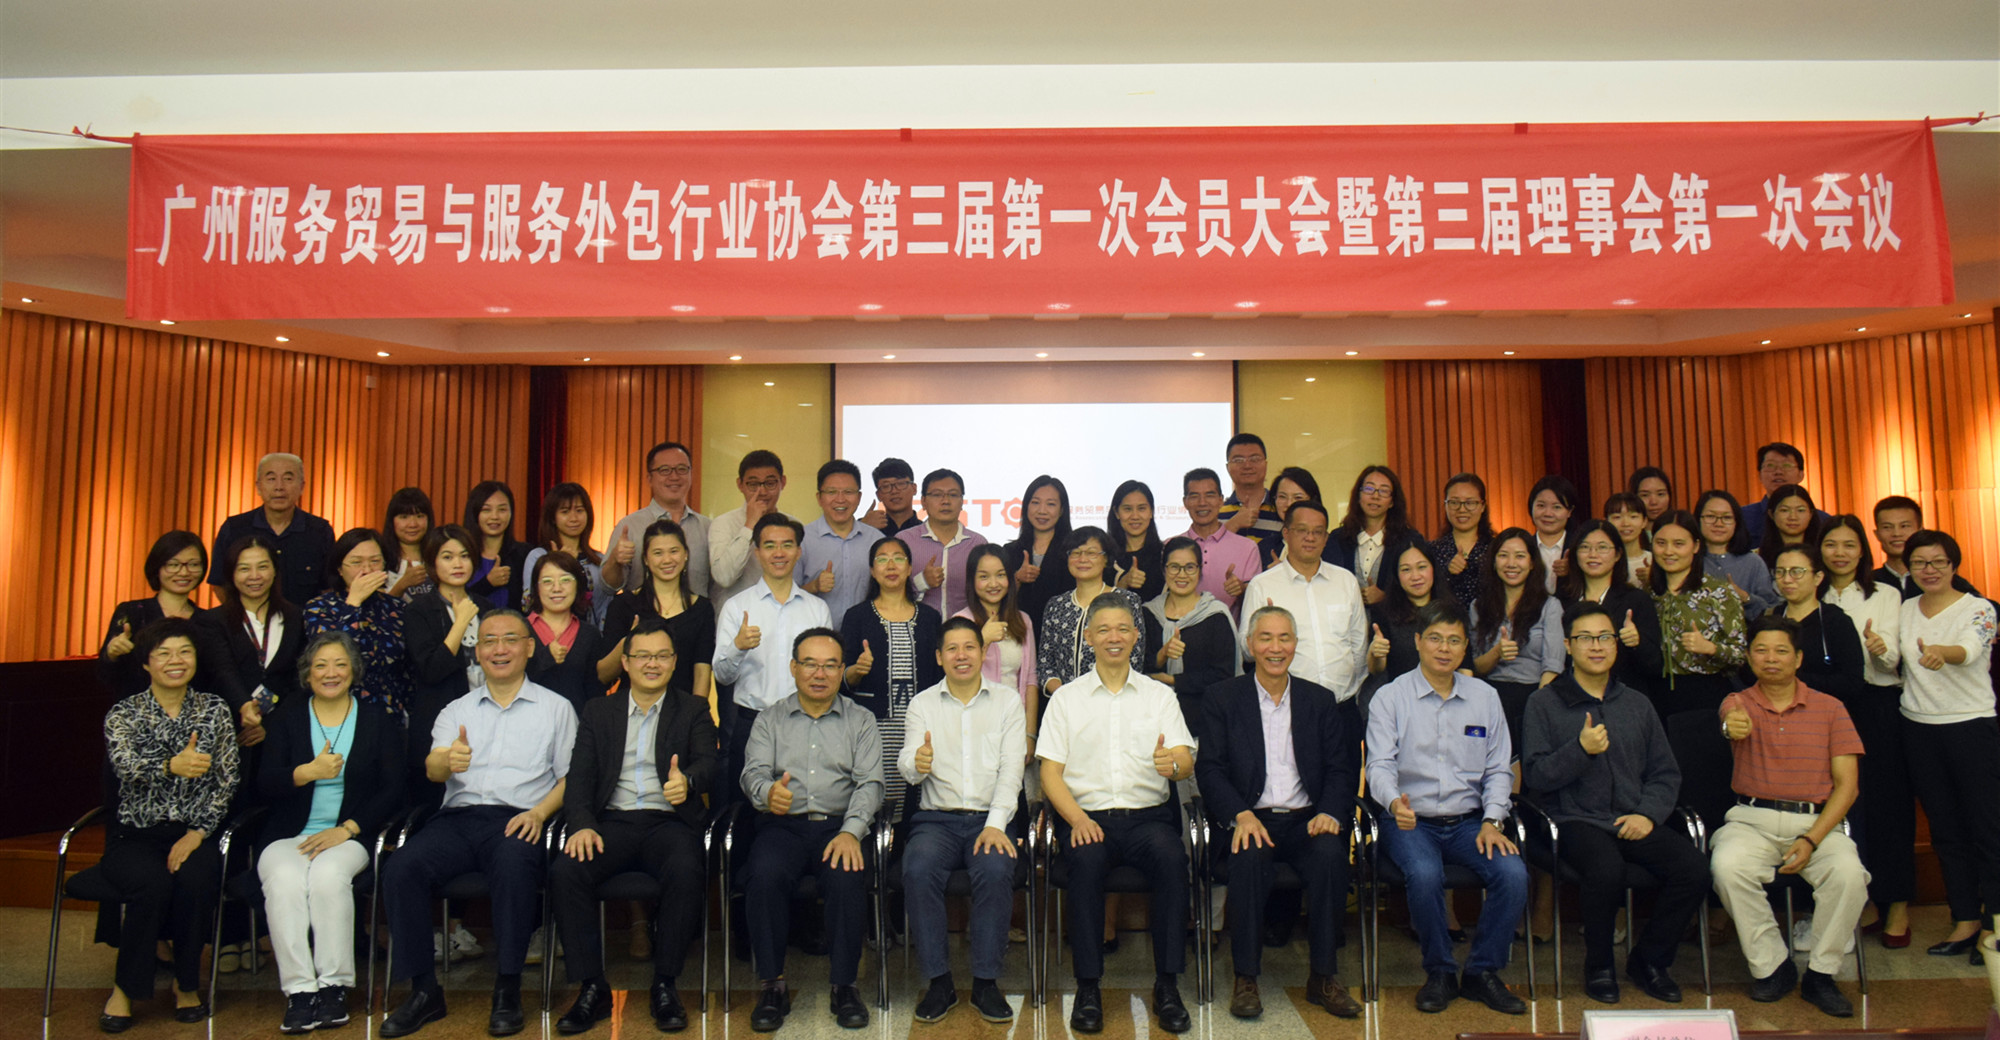 广州服务贸易与服务外包行业协会第三届第一次会员大会暨第三届理事会第一次会议顺利召开